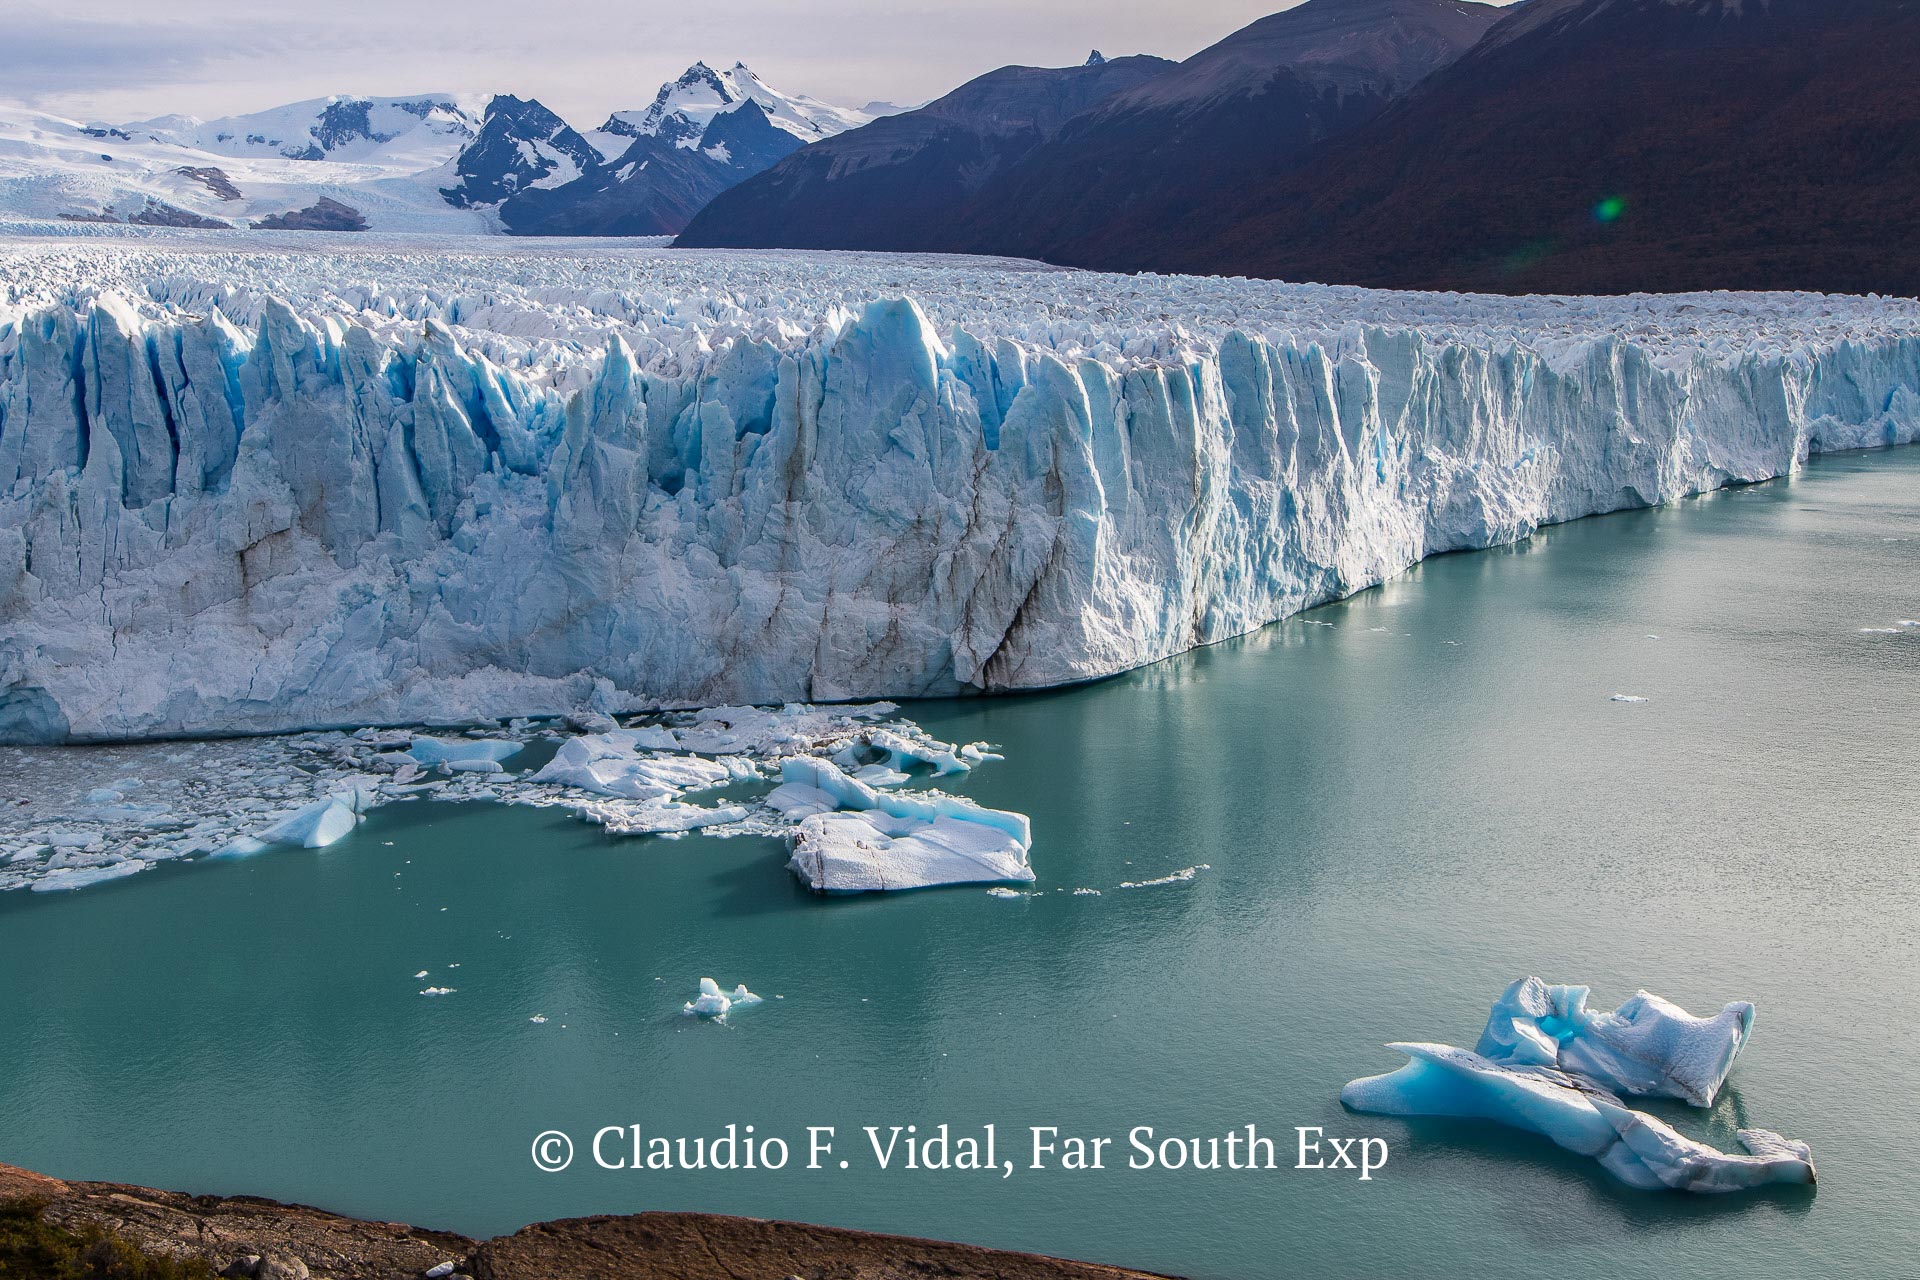 El Calafate, Argentina - Los Glaciares National Park